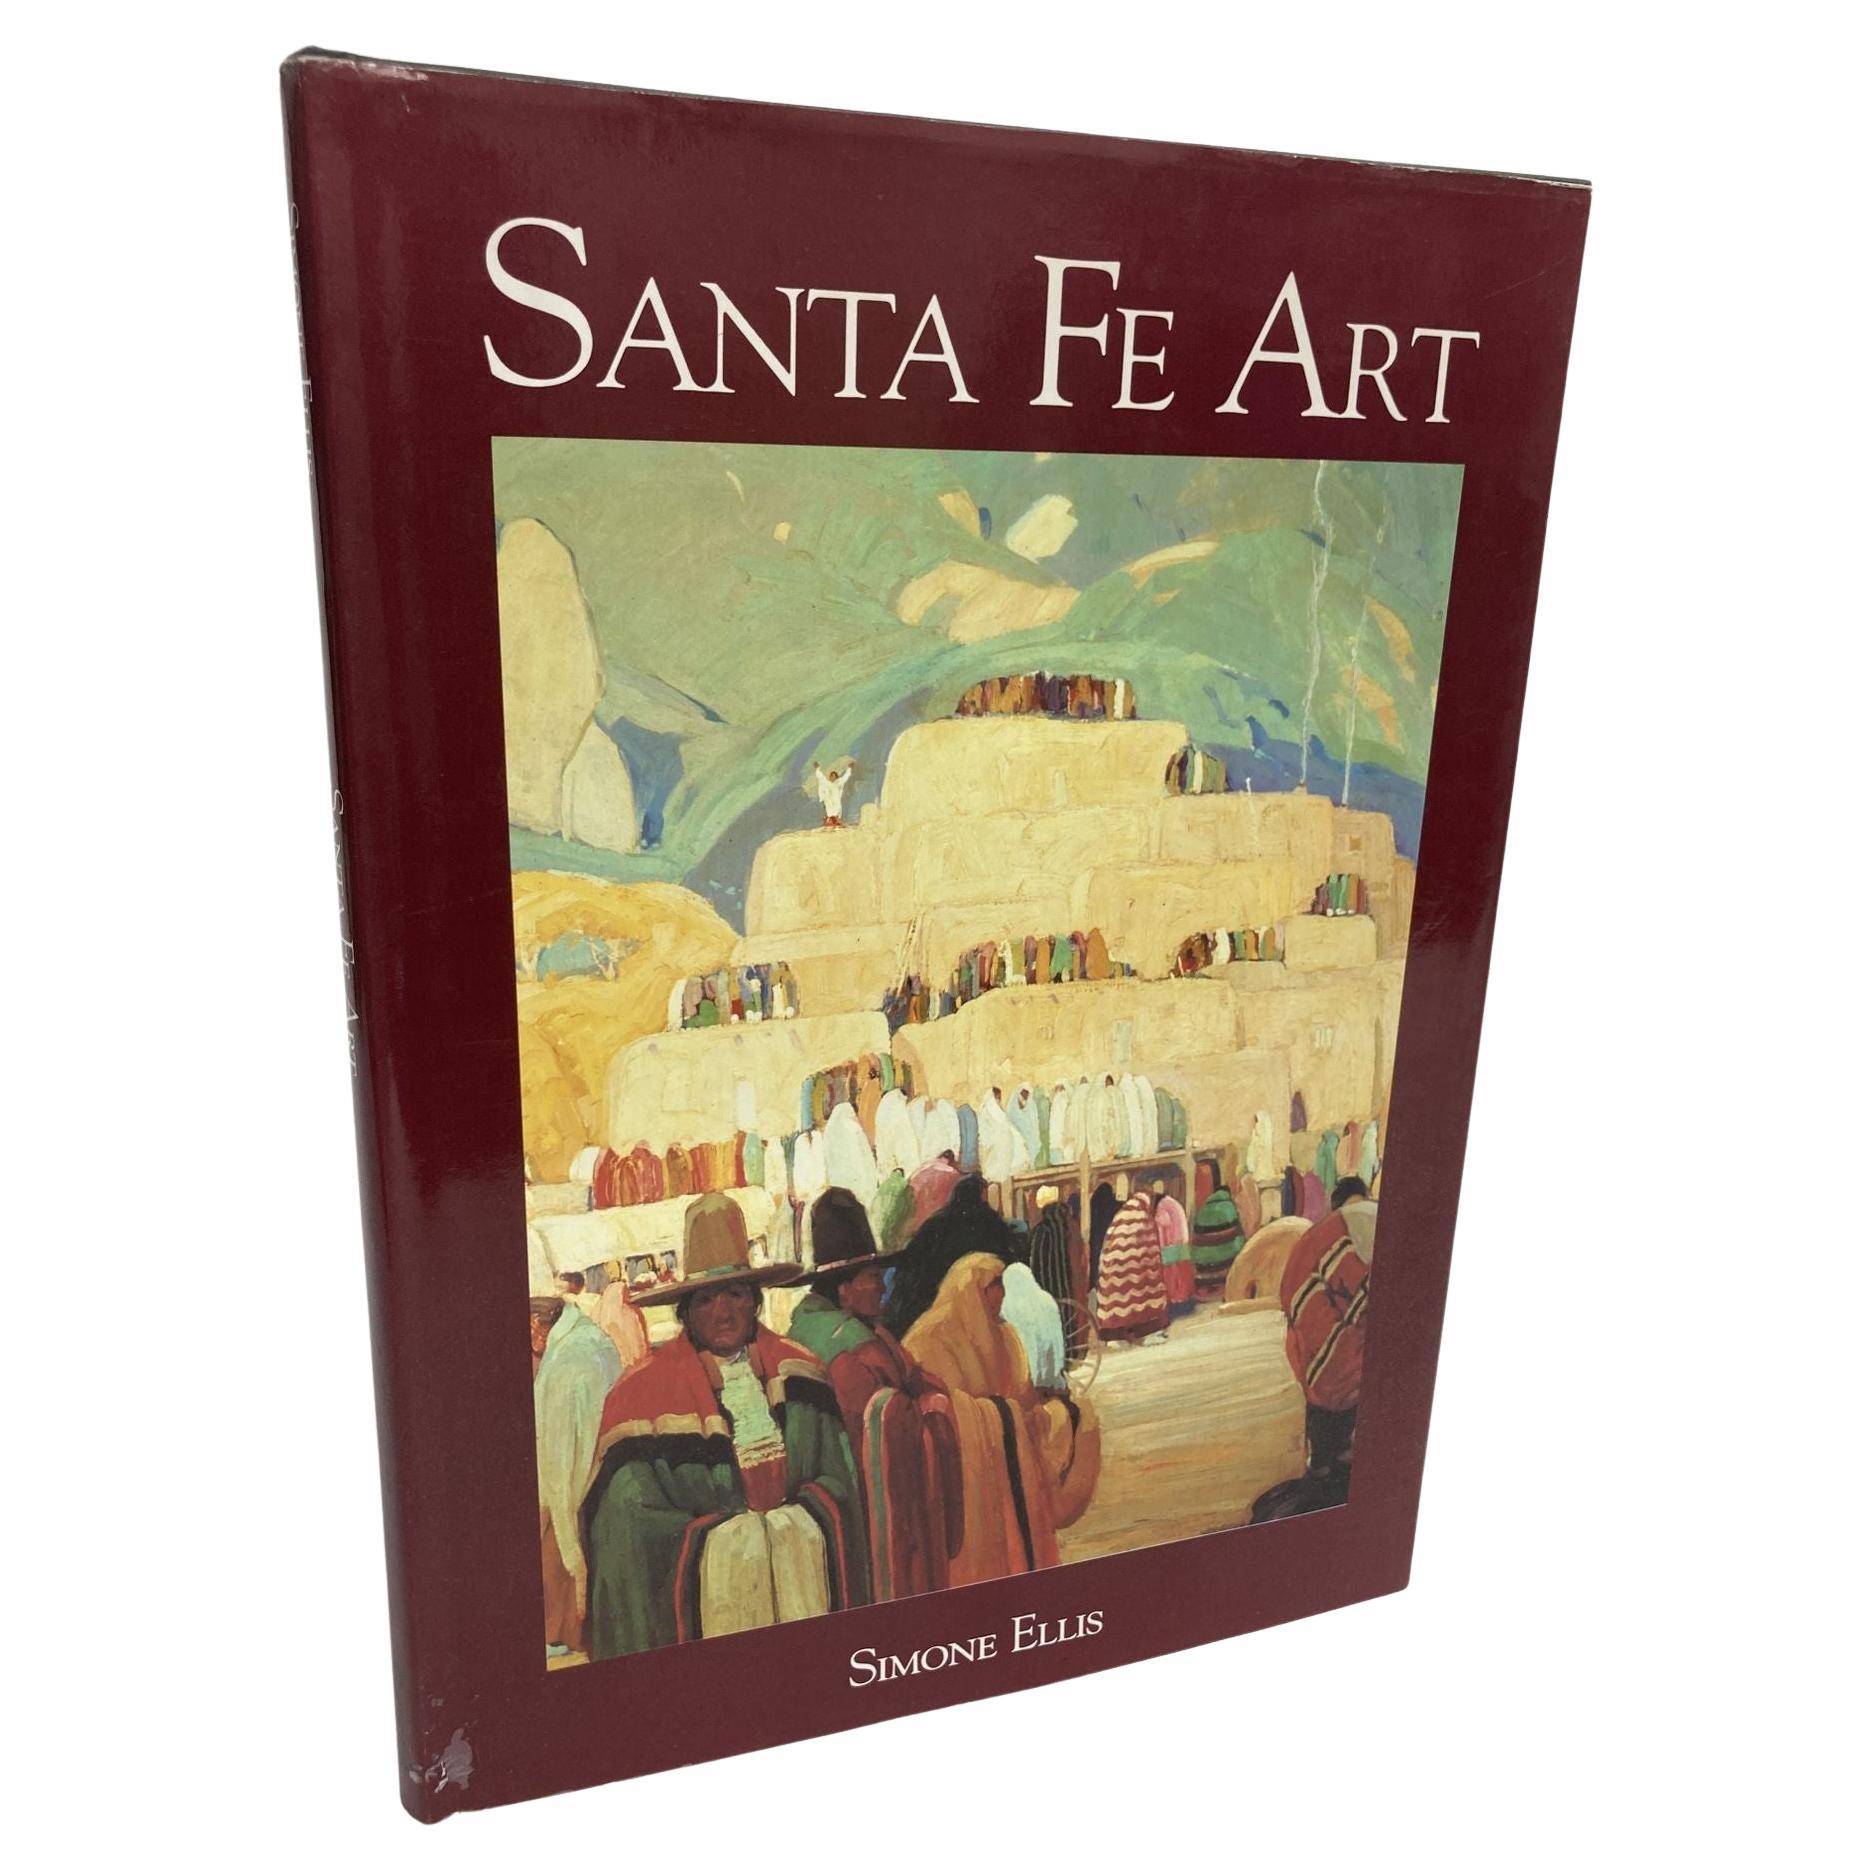 Santa Fe Kunst. Ellis, Simone, Herausgegeben von Crescent Books, New York, 1993 Groß